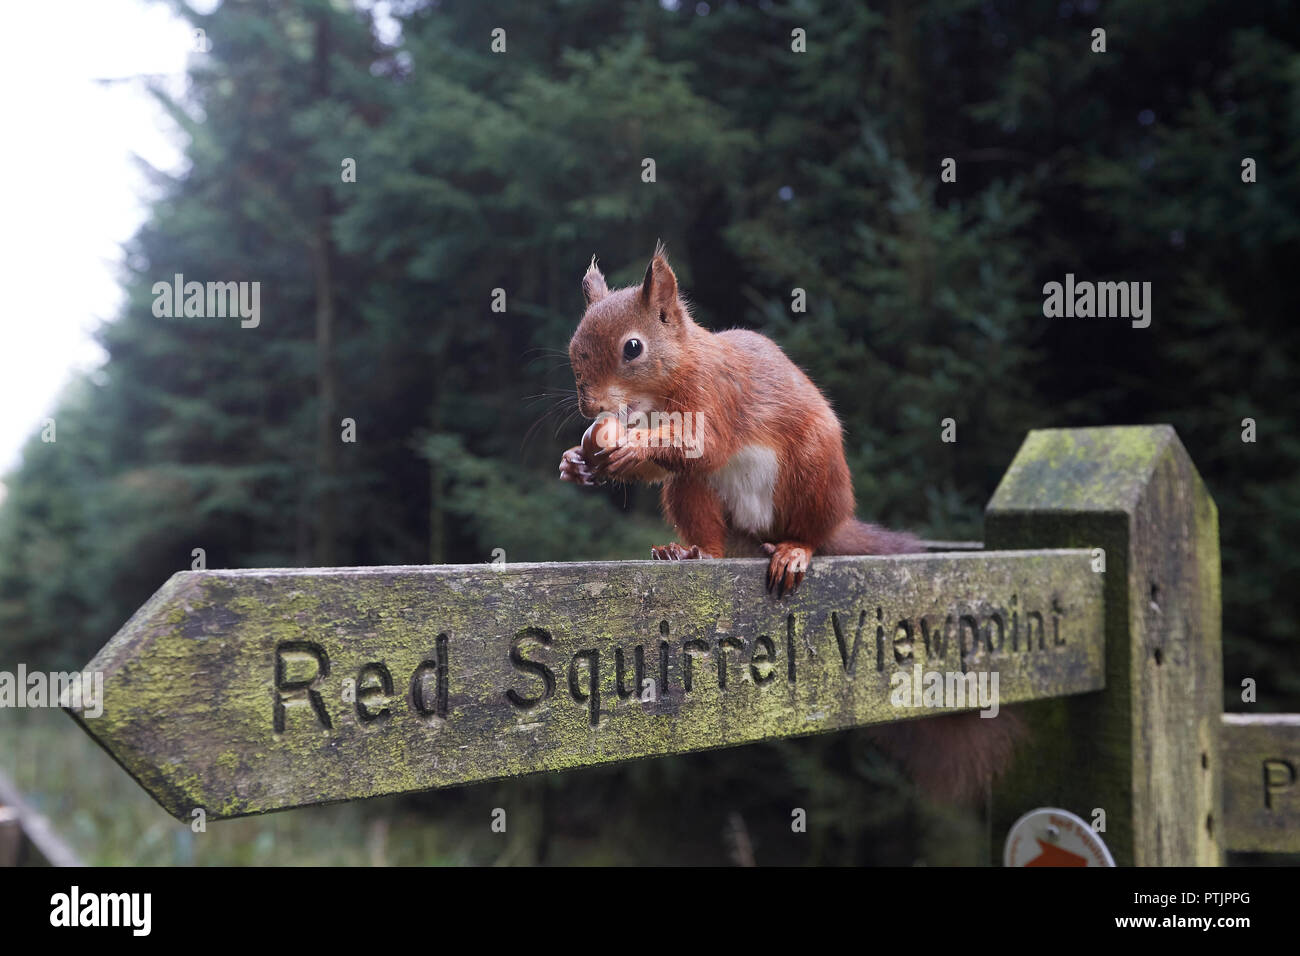 La ardilla roja, Sciurus vulgaris, comiendo una avellana en una ardilla roja mirador sendero público cartel, Snaizeholme, cerca Hawes, Yorkshire Dales Nati Foto de stock